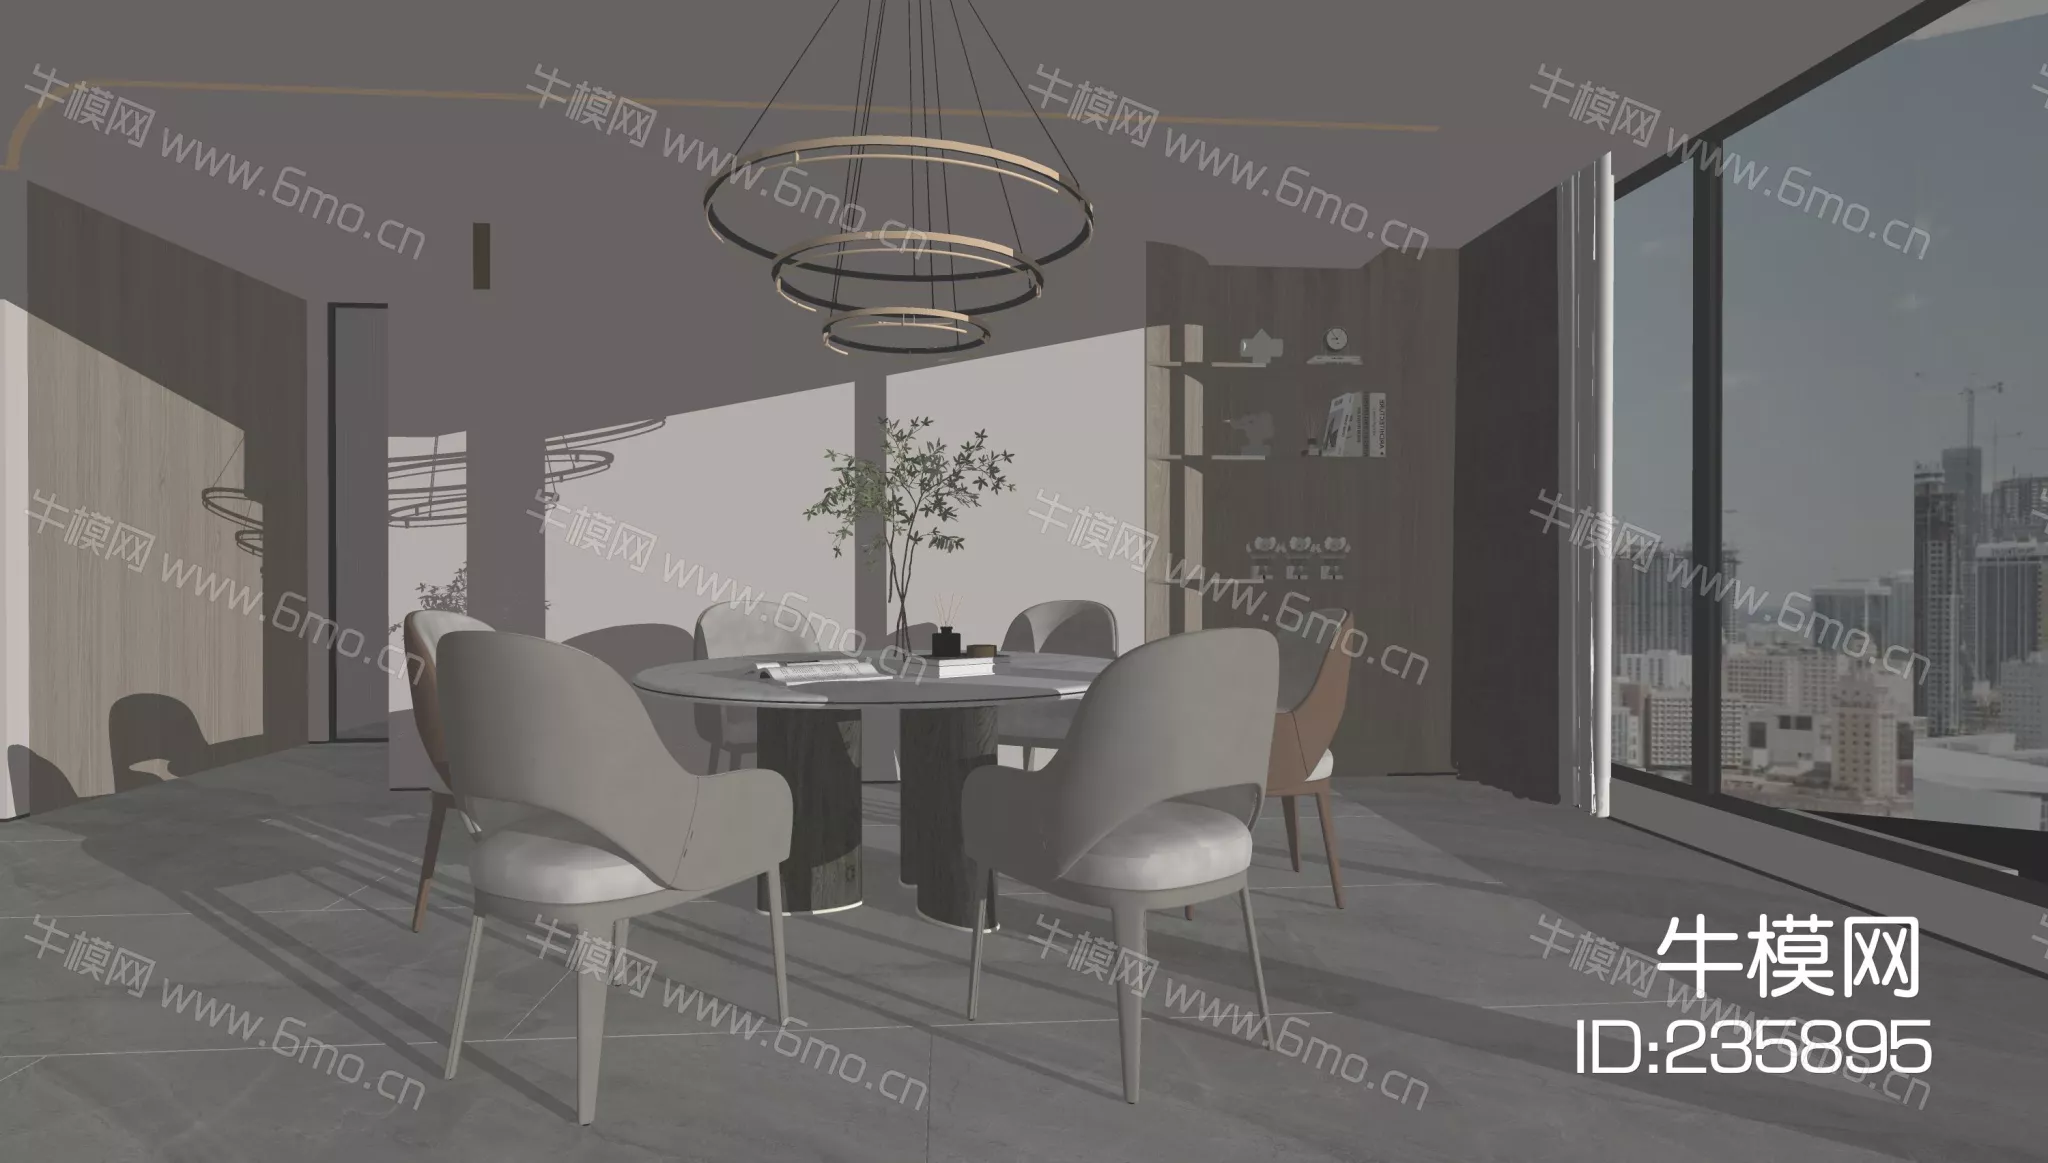 MODERN DINING TABLE SET - SKETCHUP 3D MODEL - ENSCAPE - 235895